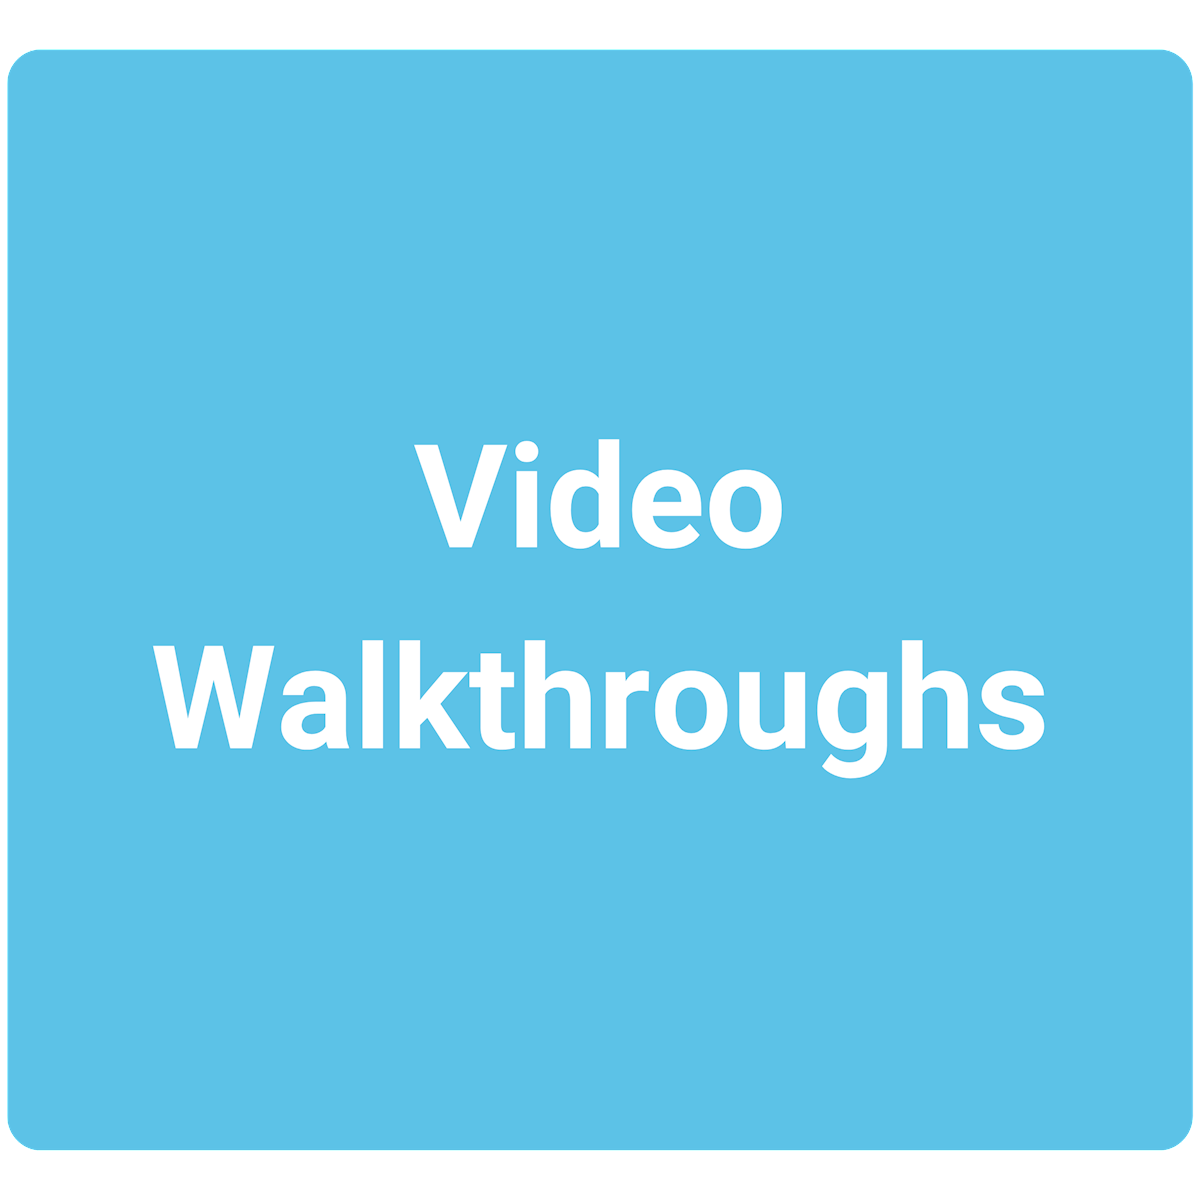 Video Walkthroughs